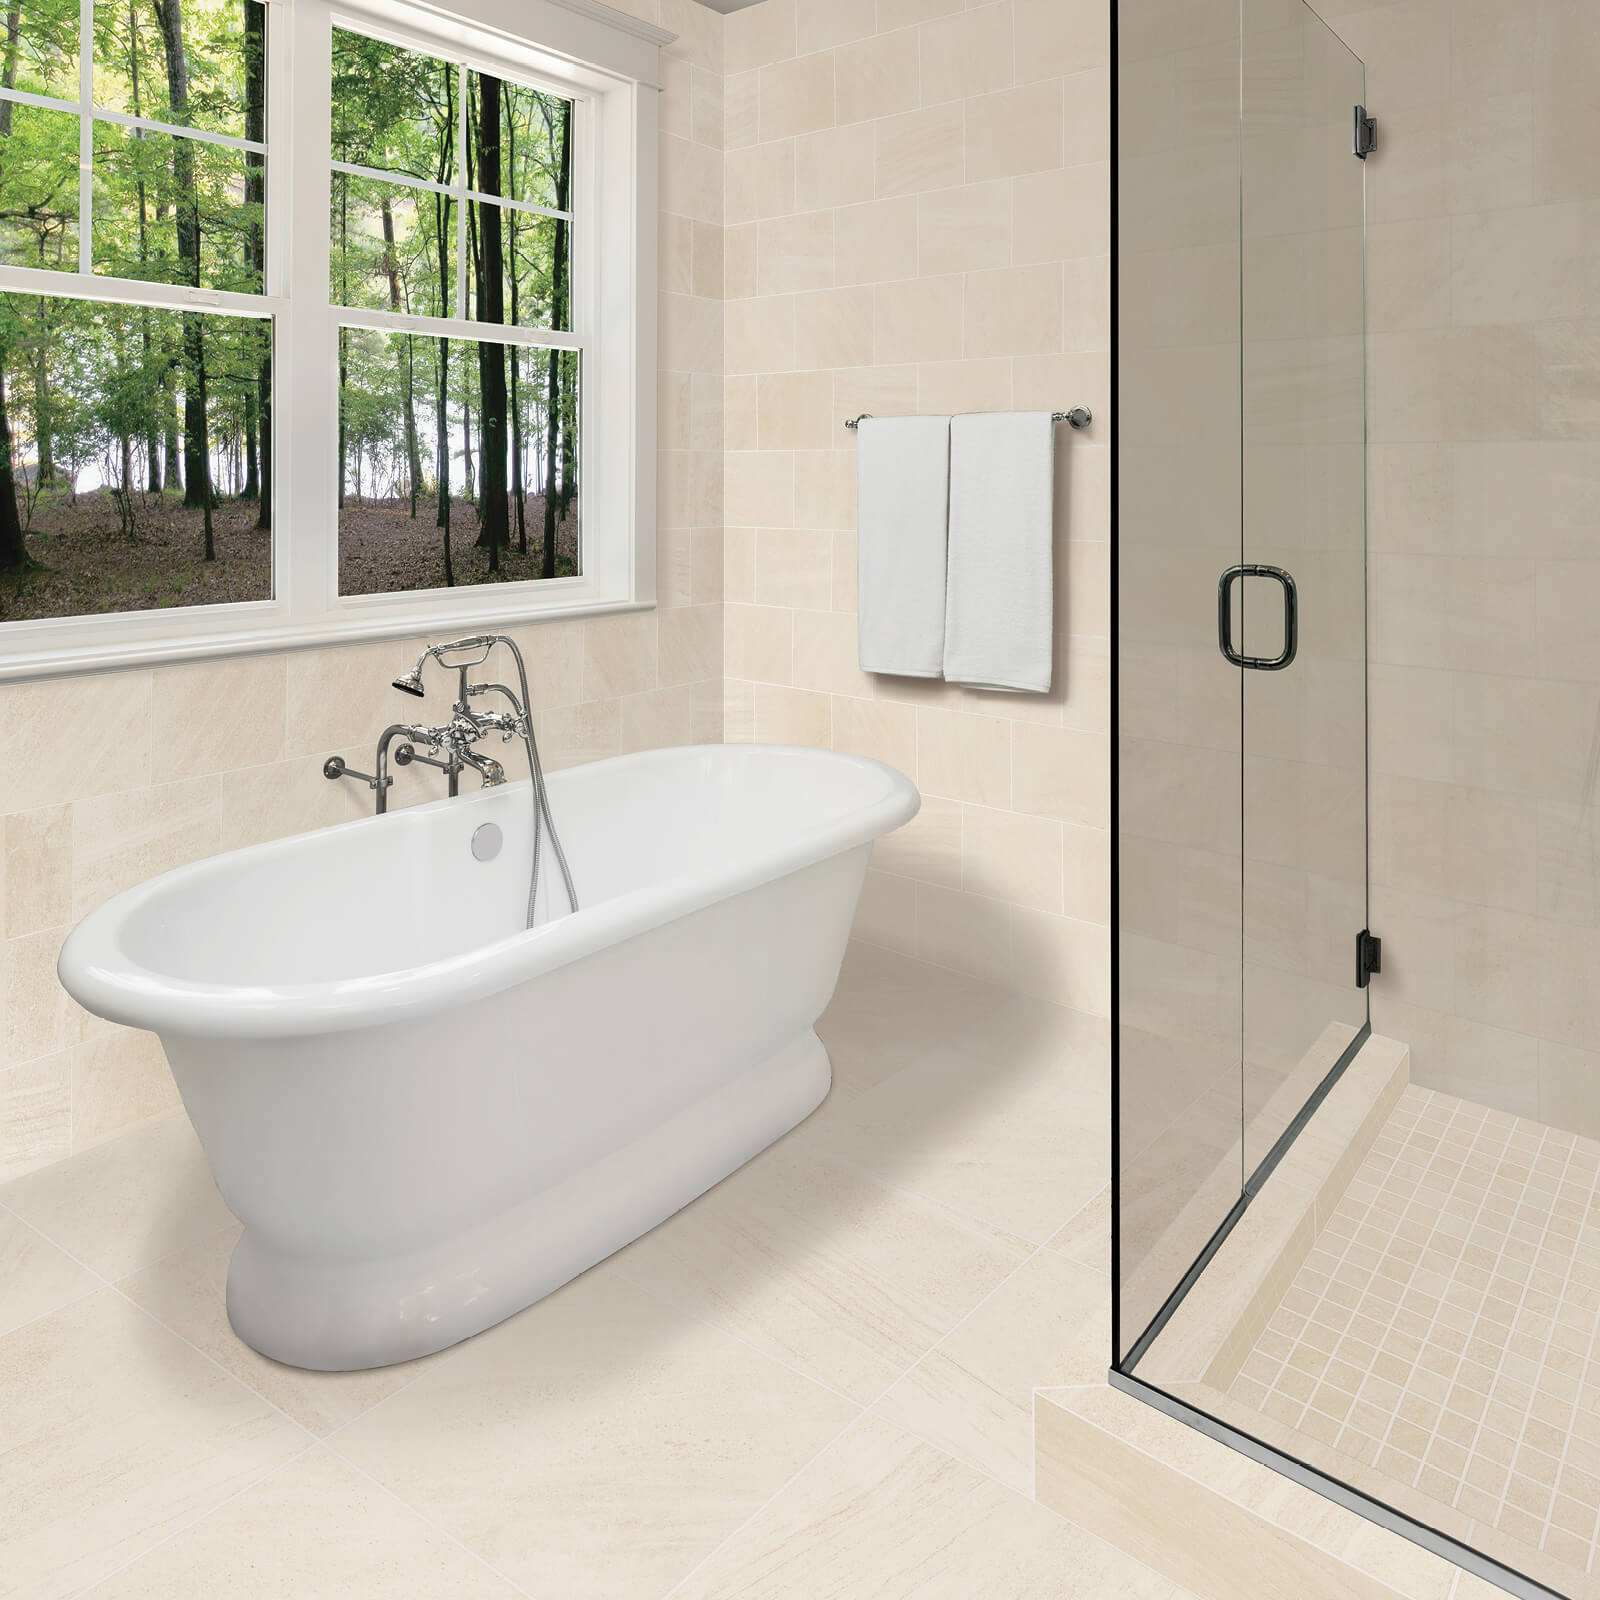 Shower room tiles | CarpetsPlus COLORTILE & Wholesale Flooring